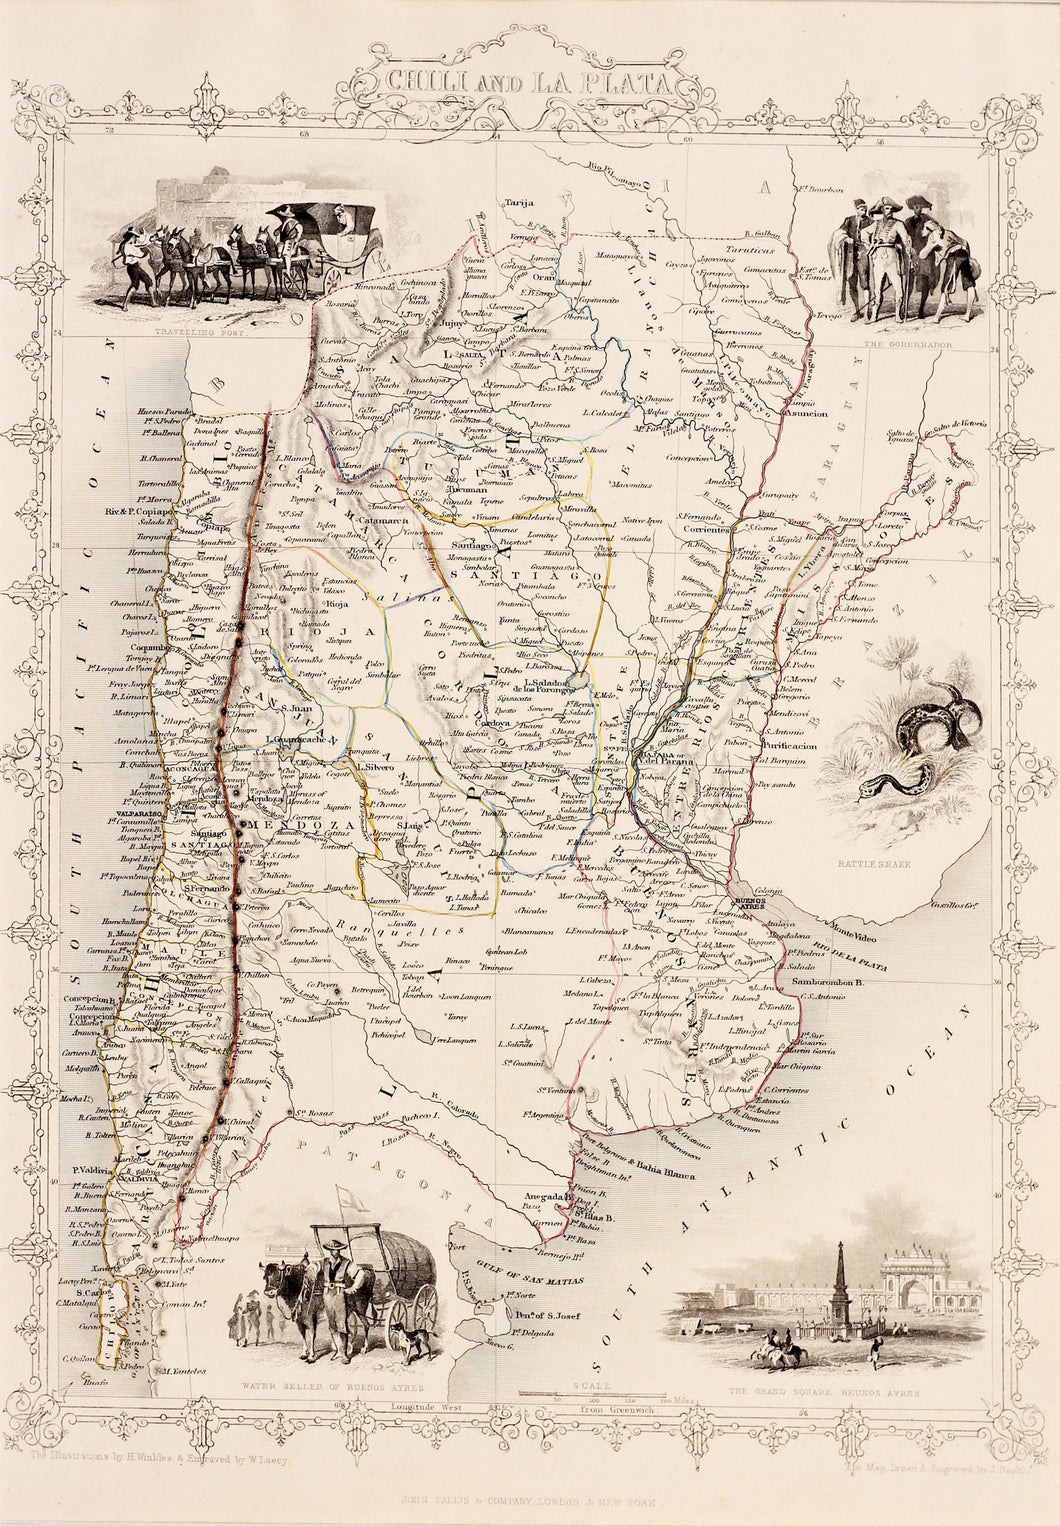 Chili and La Plata - Antique Map circa 1851